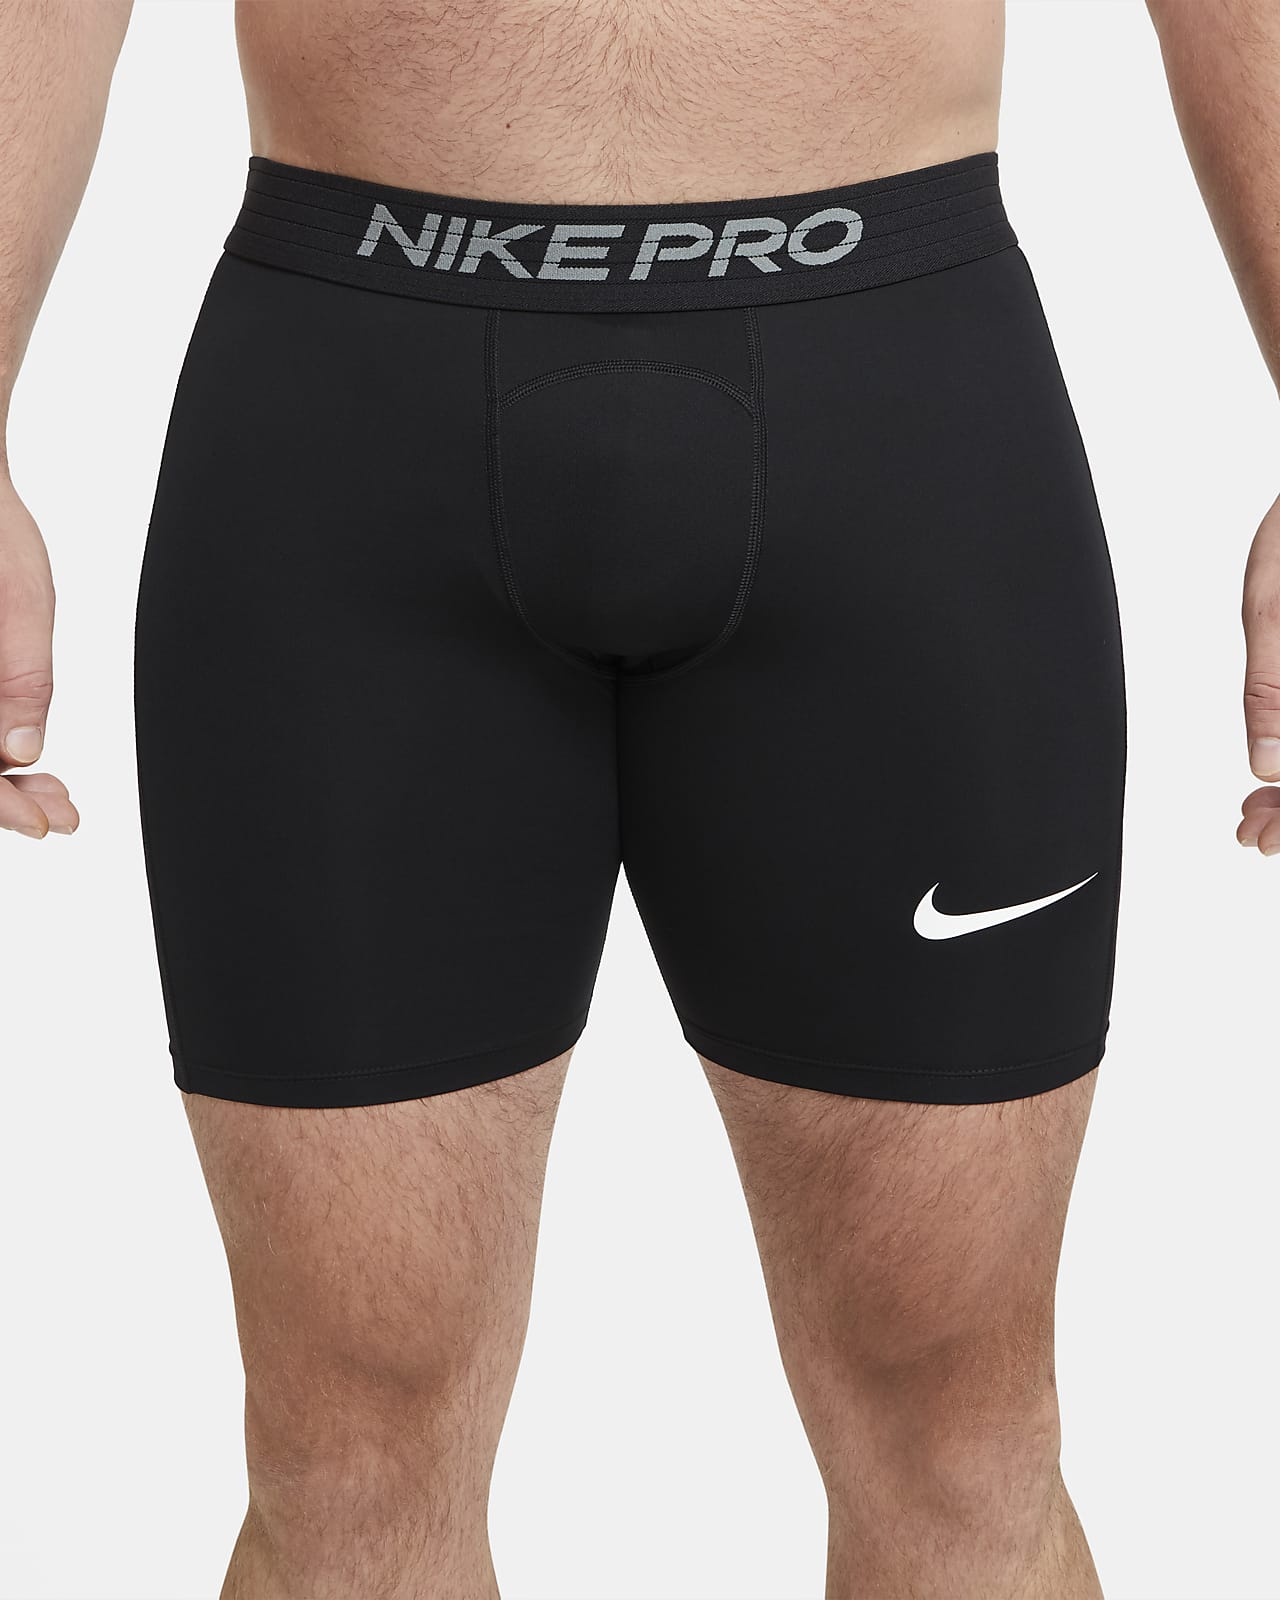 nike pro shorts next